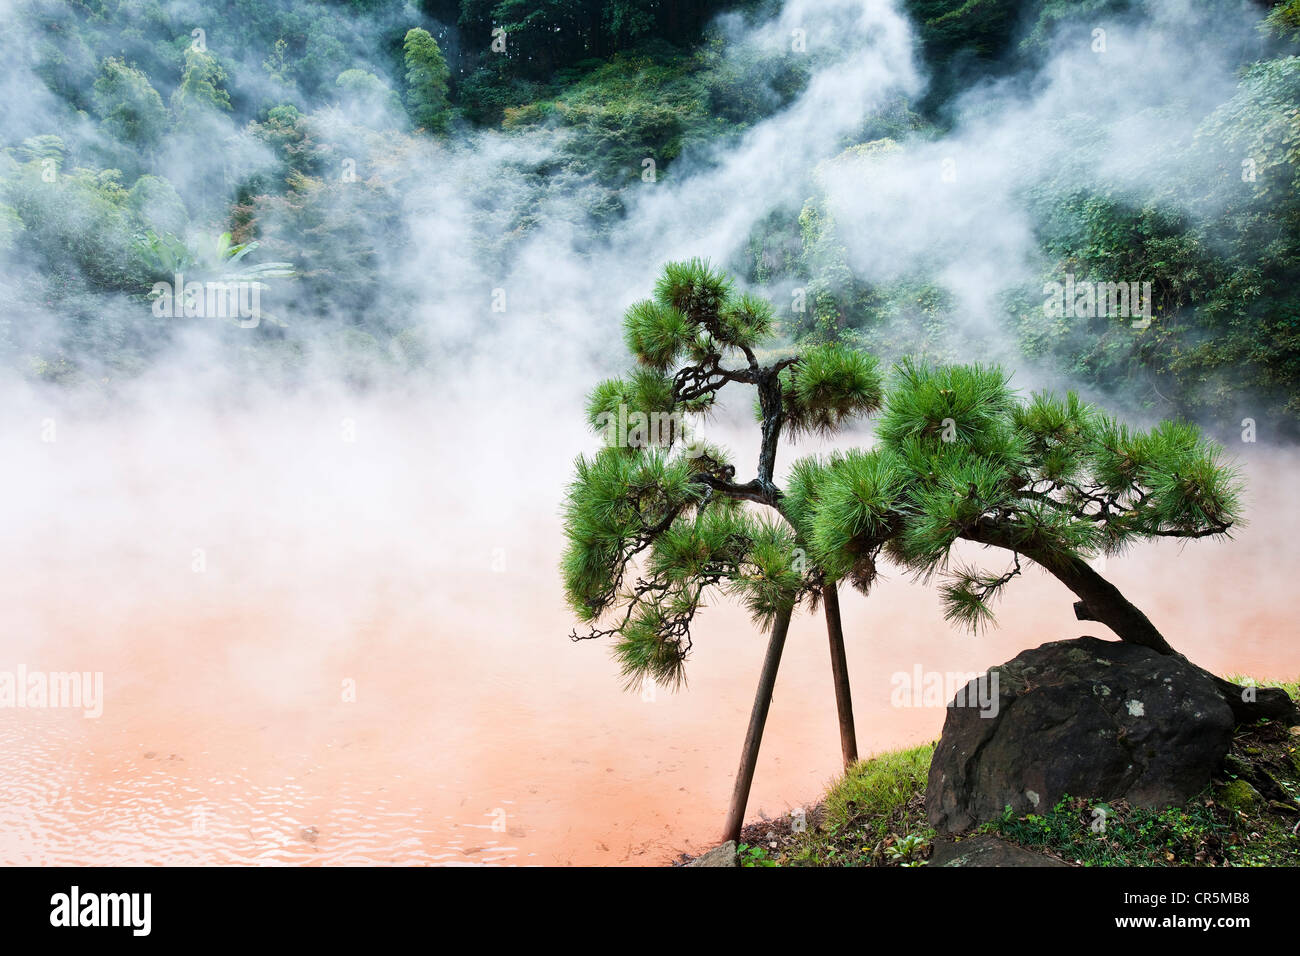 La Isla de Kyushu, Japón, ciudad de Beppu, famoso por sus aguas termales (onsen), el Chinoike jigoku Primavera, el infierno del Estanque de Sangre Foto de stock